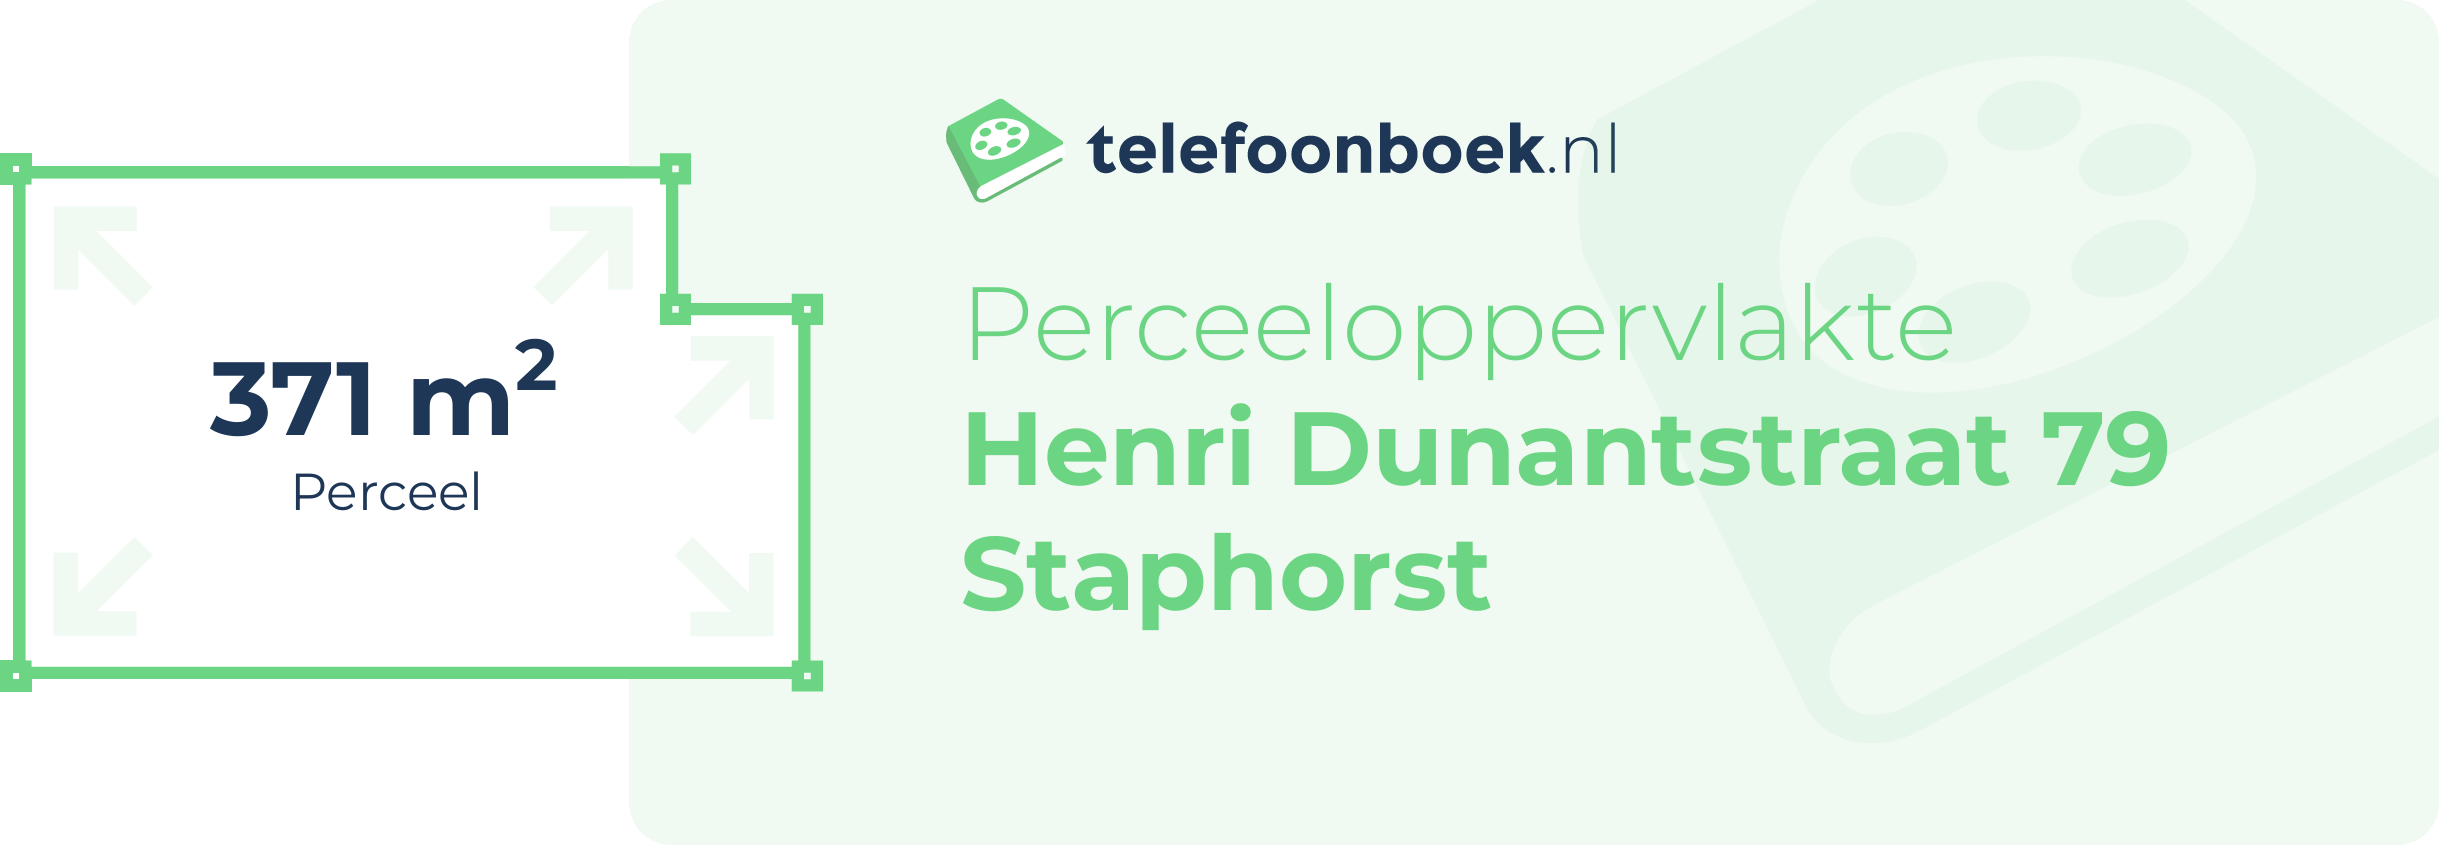 Perceeloppervlakte Henri Dunantstraat 79 Staphorst